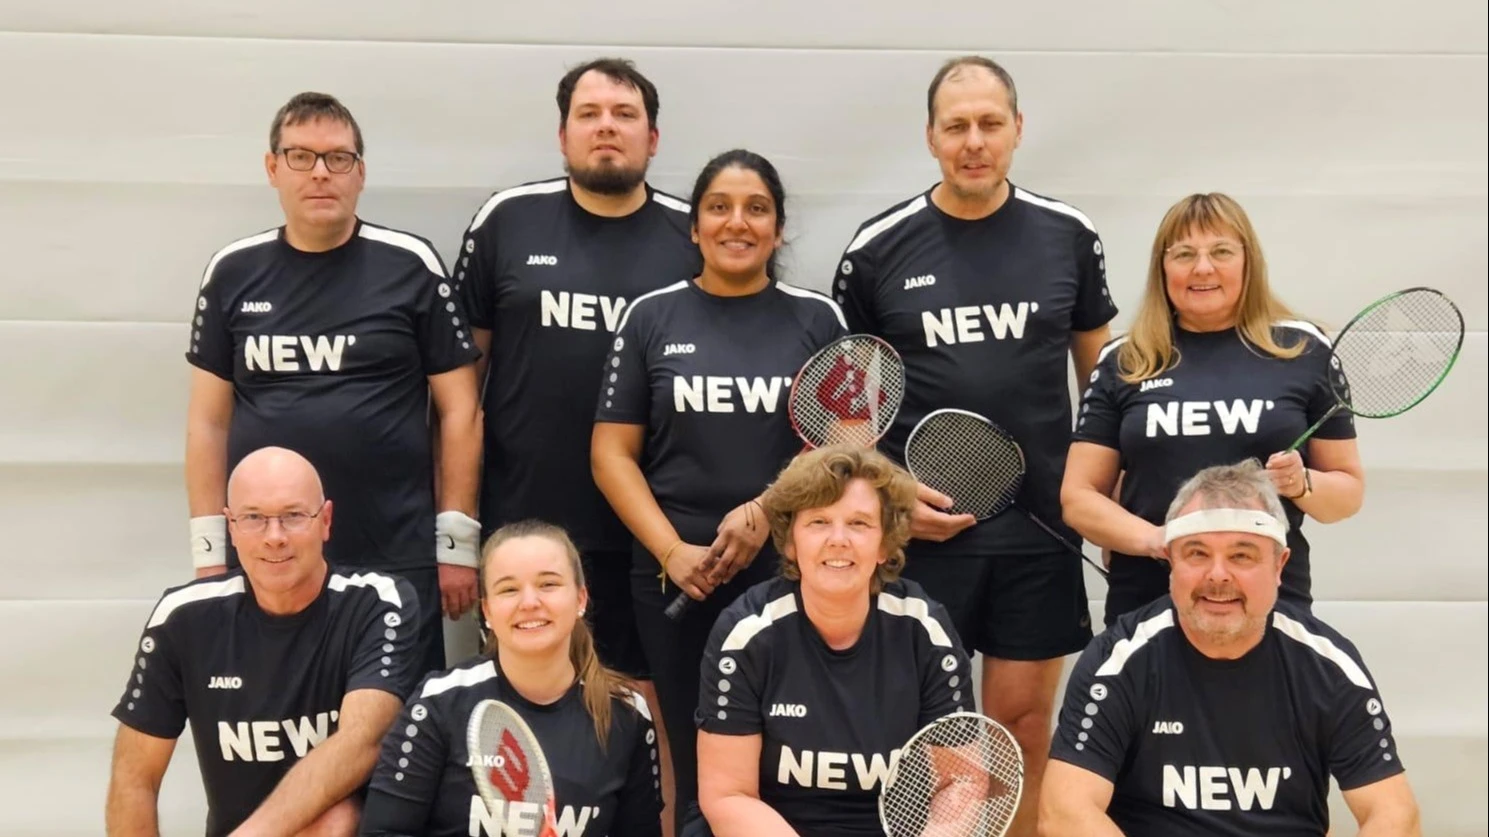 Badminton Mannschaft mit NEW Trikots.